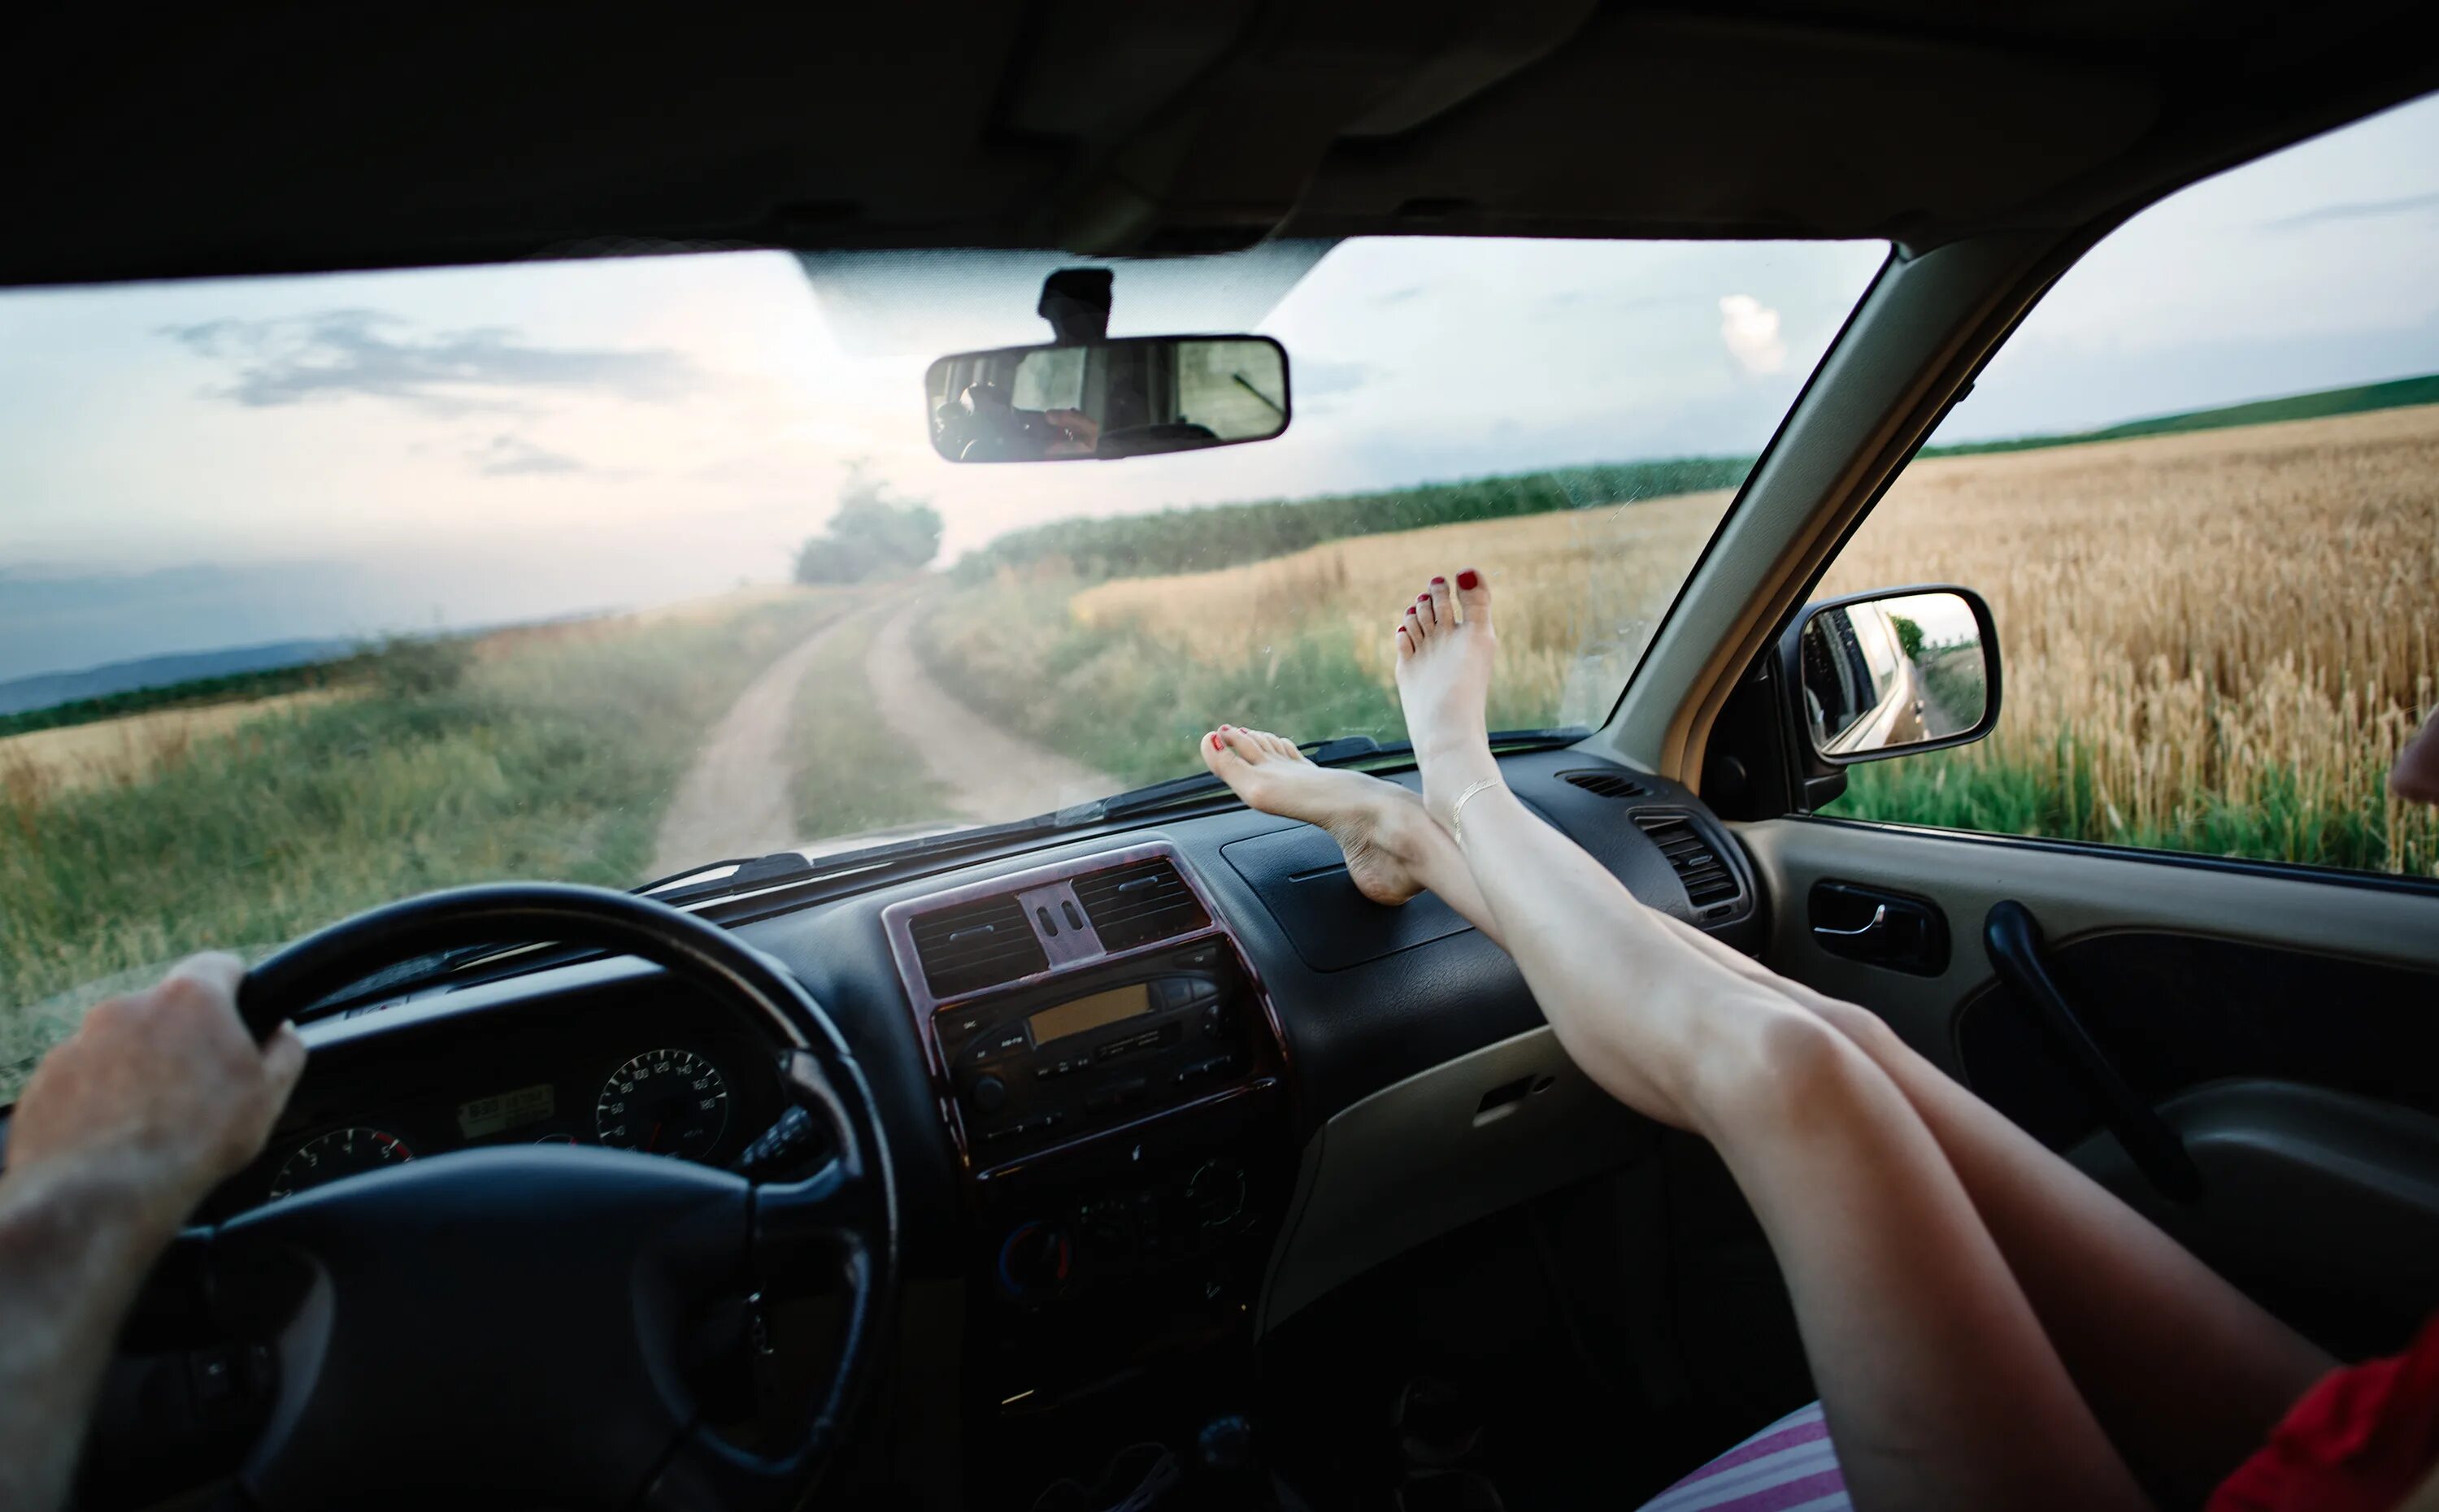 Car ride here. За рулем машины. Вид из окна машины. Машина лето. Рука из окна машины.